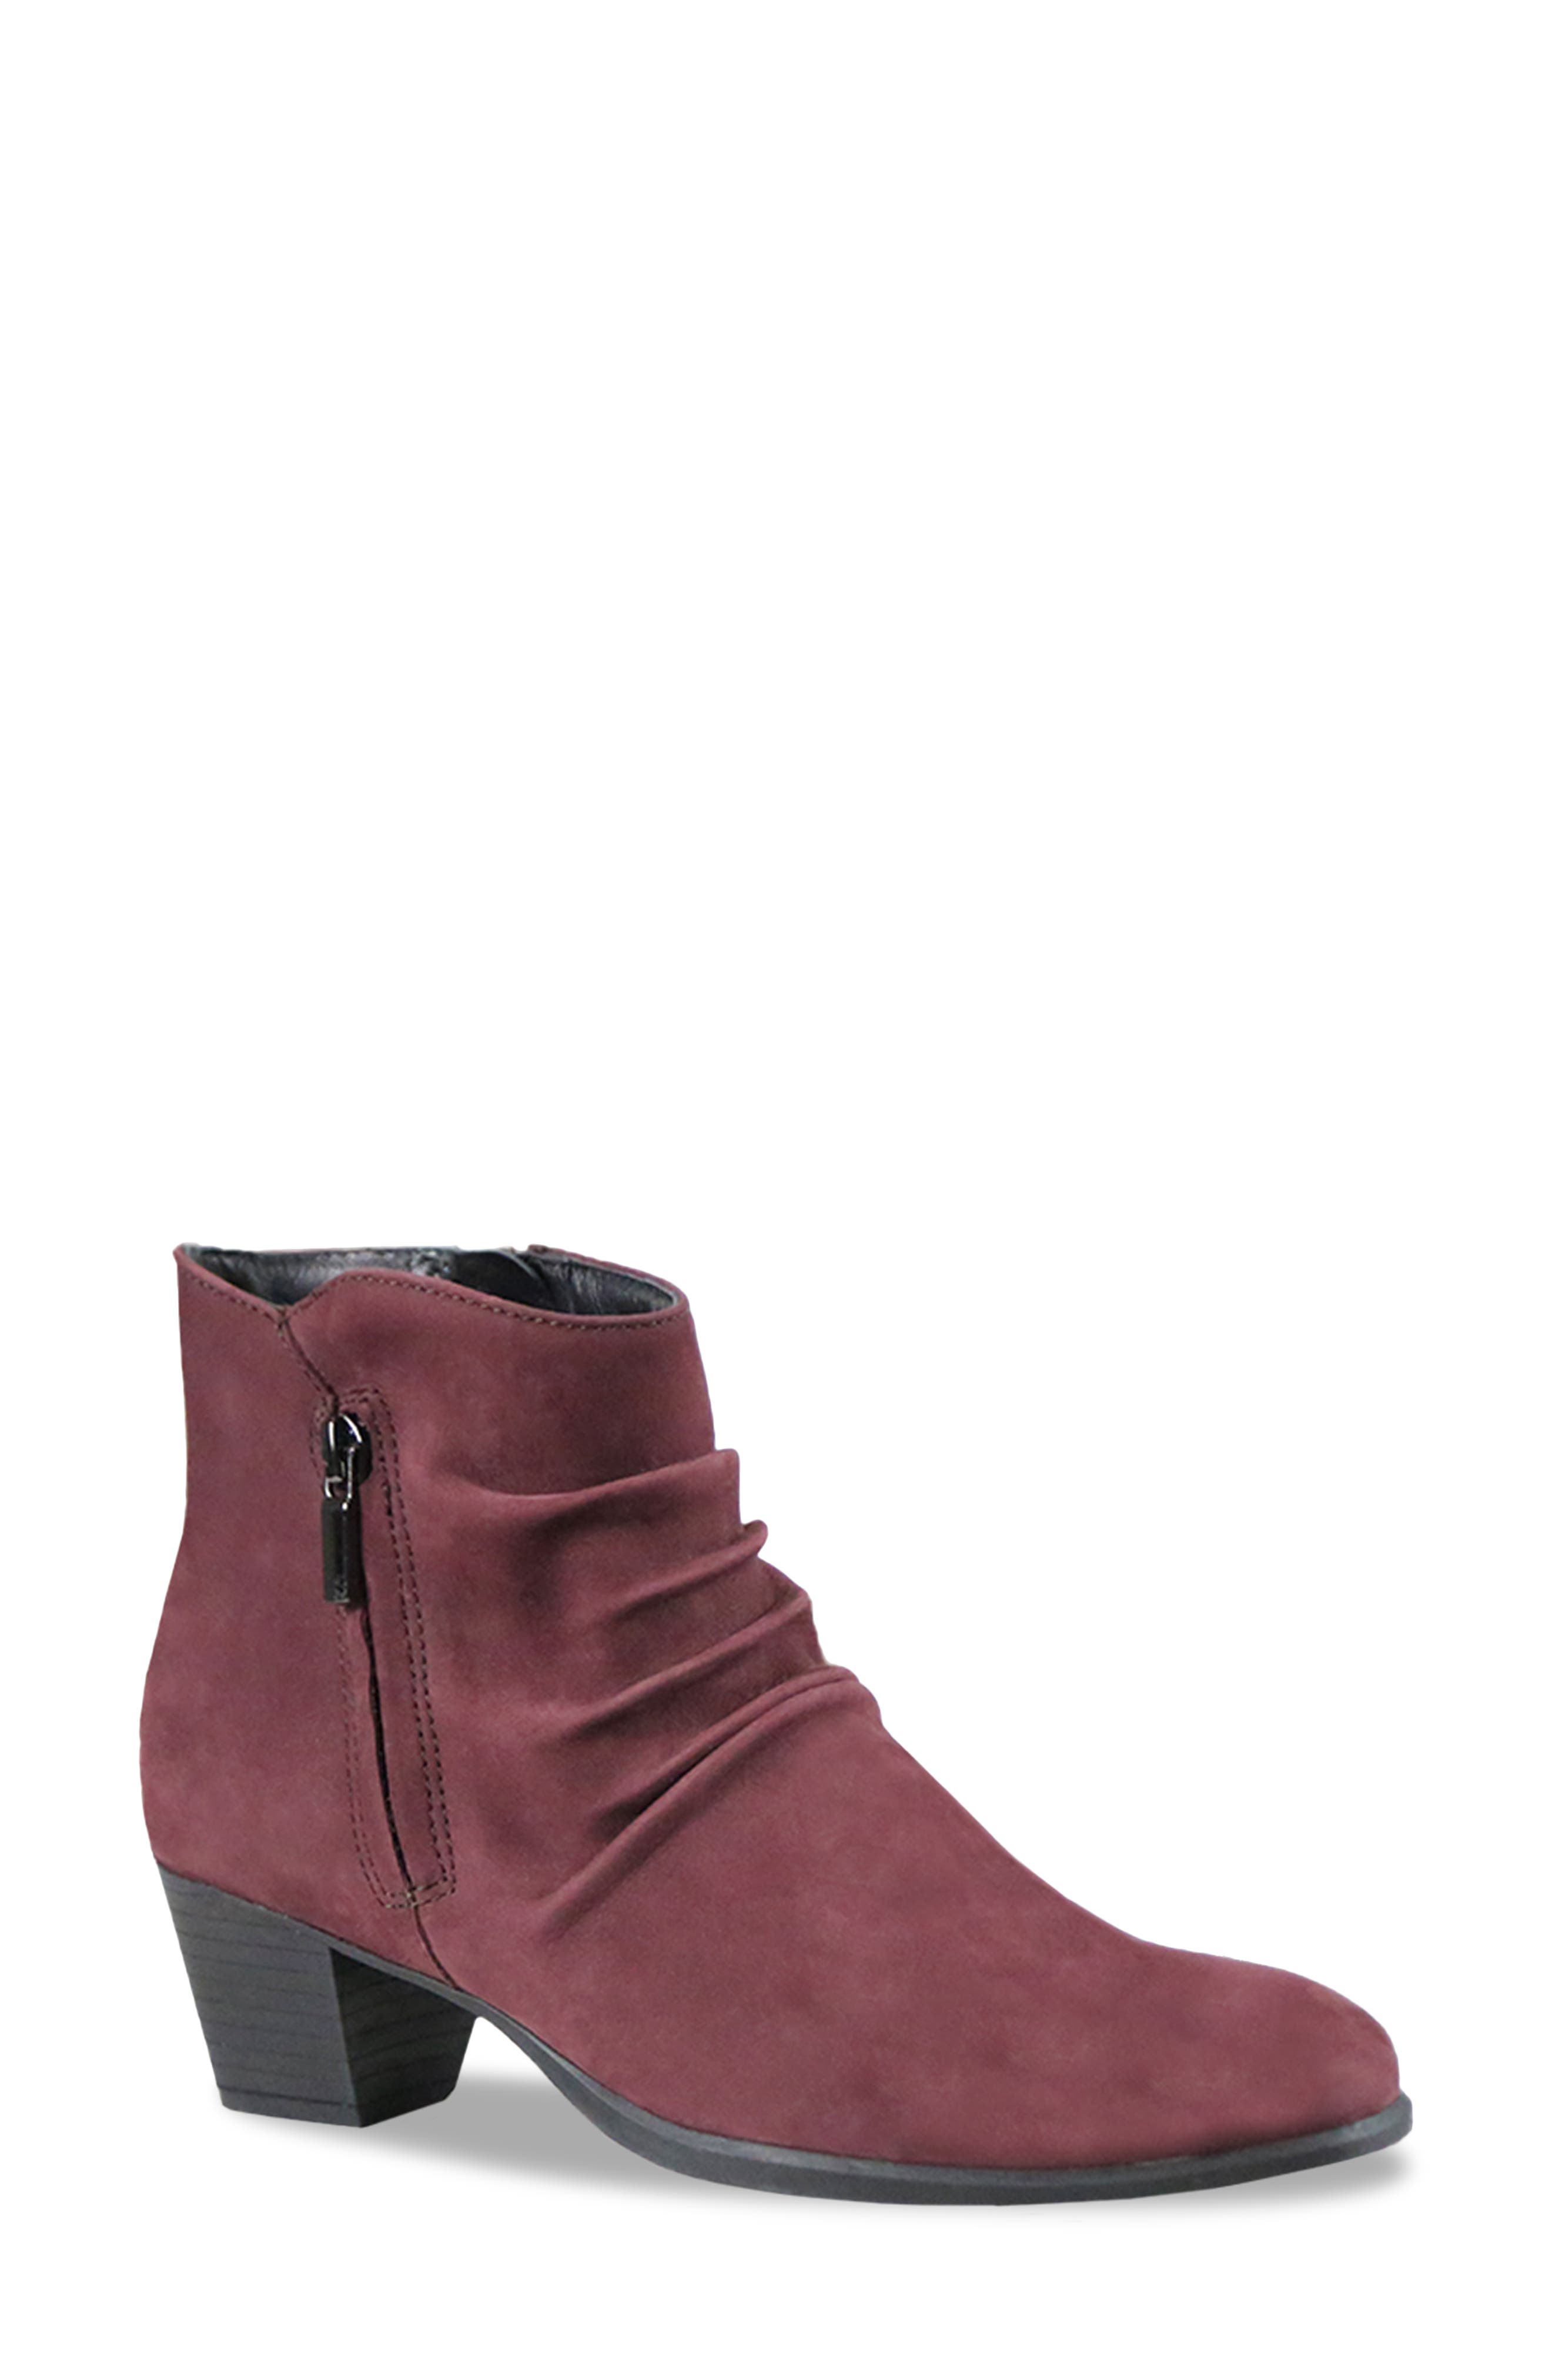 Buy > burgundy boots women > in stock